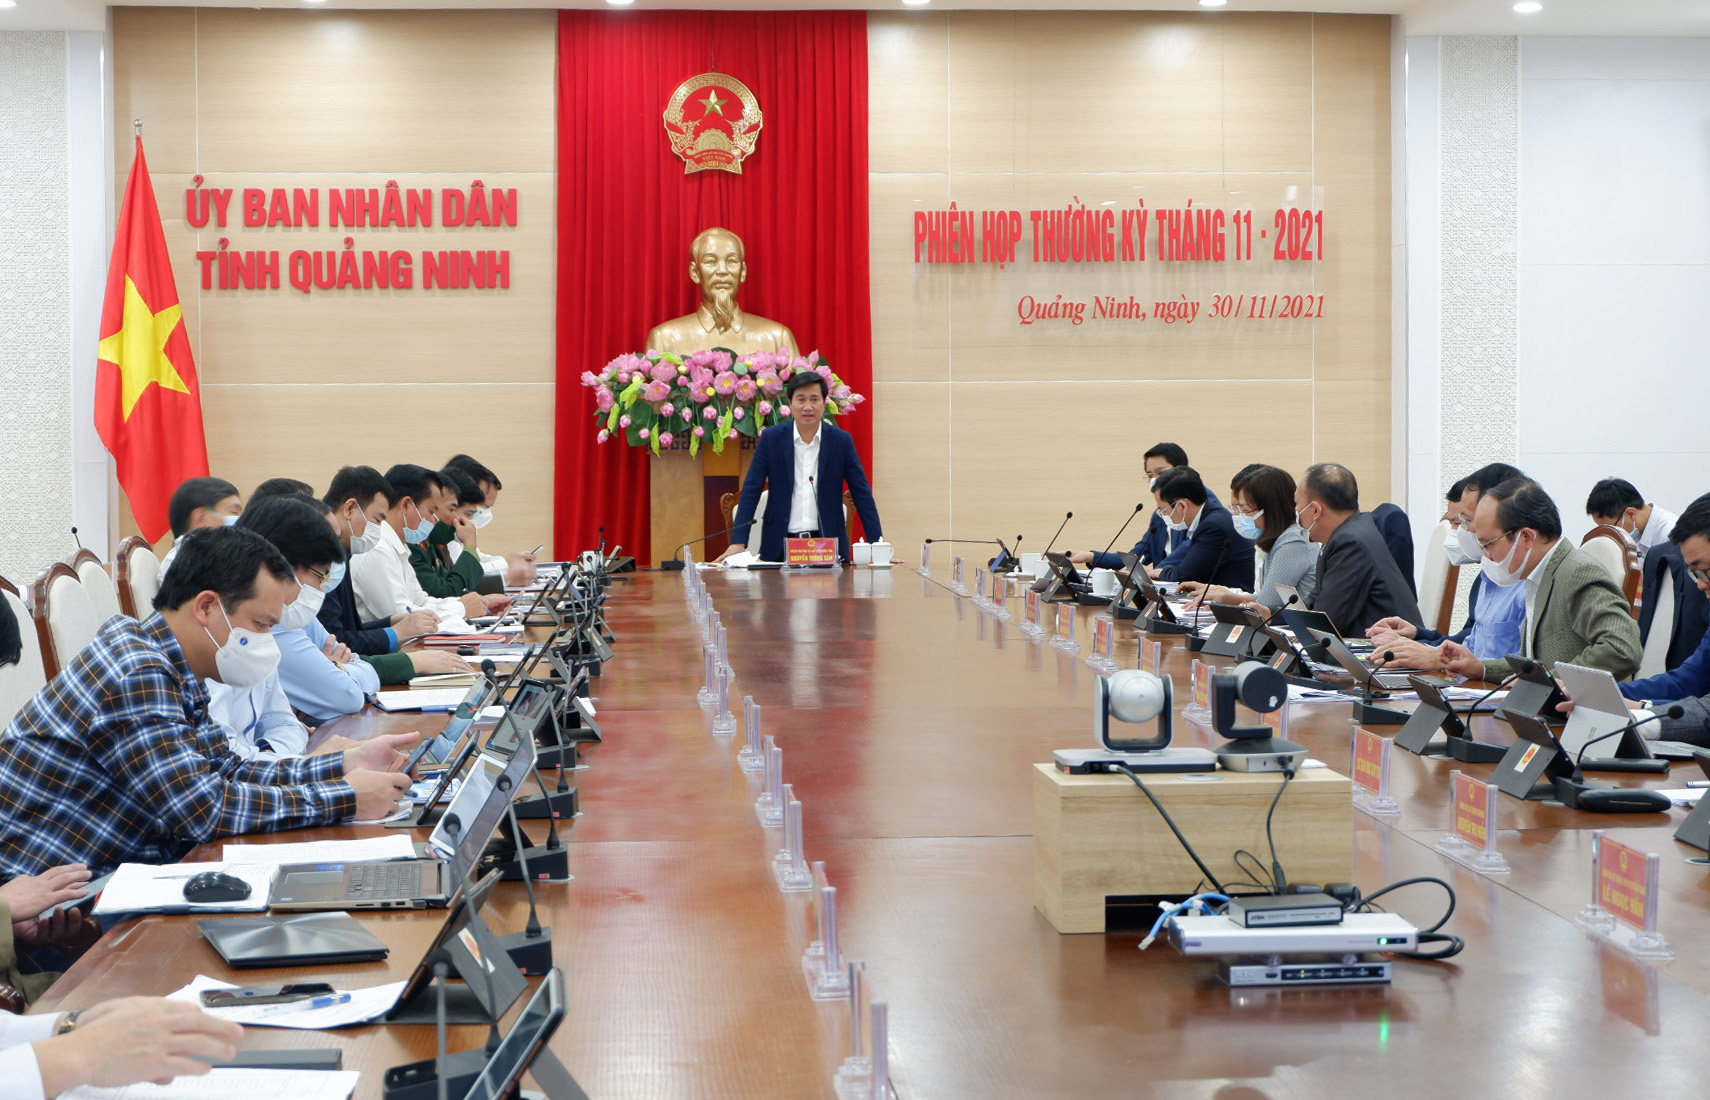 Chủ tịch UBND tỉnh Nguyễn Tường Văn chỉ đạo tại phiên họp thường kỳ UBND tỉnh tháng 11/2021.